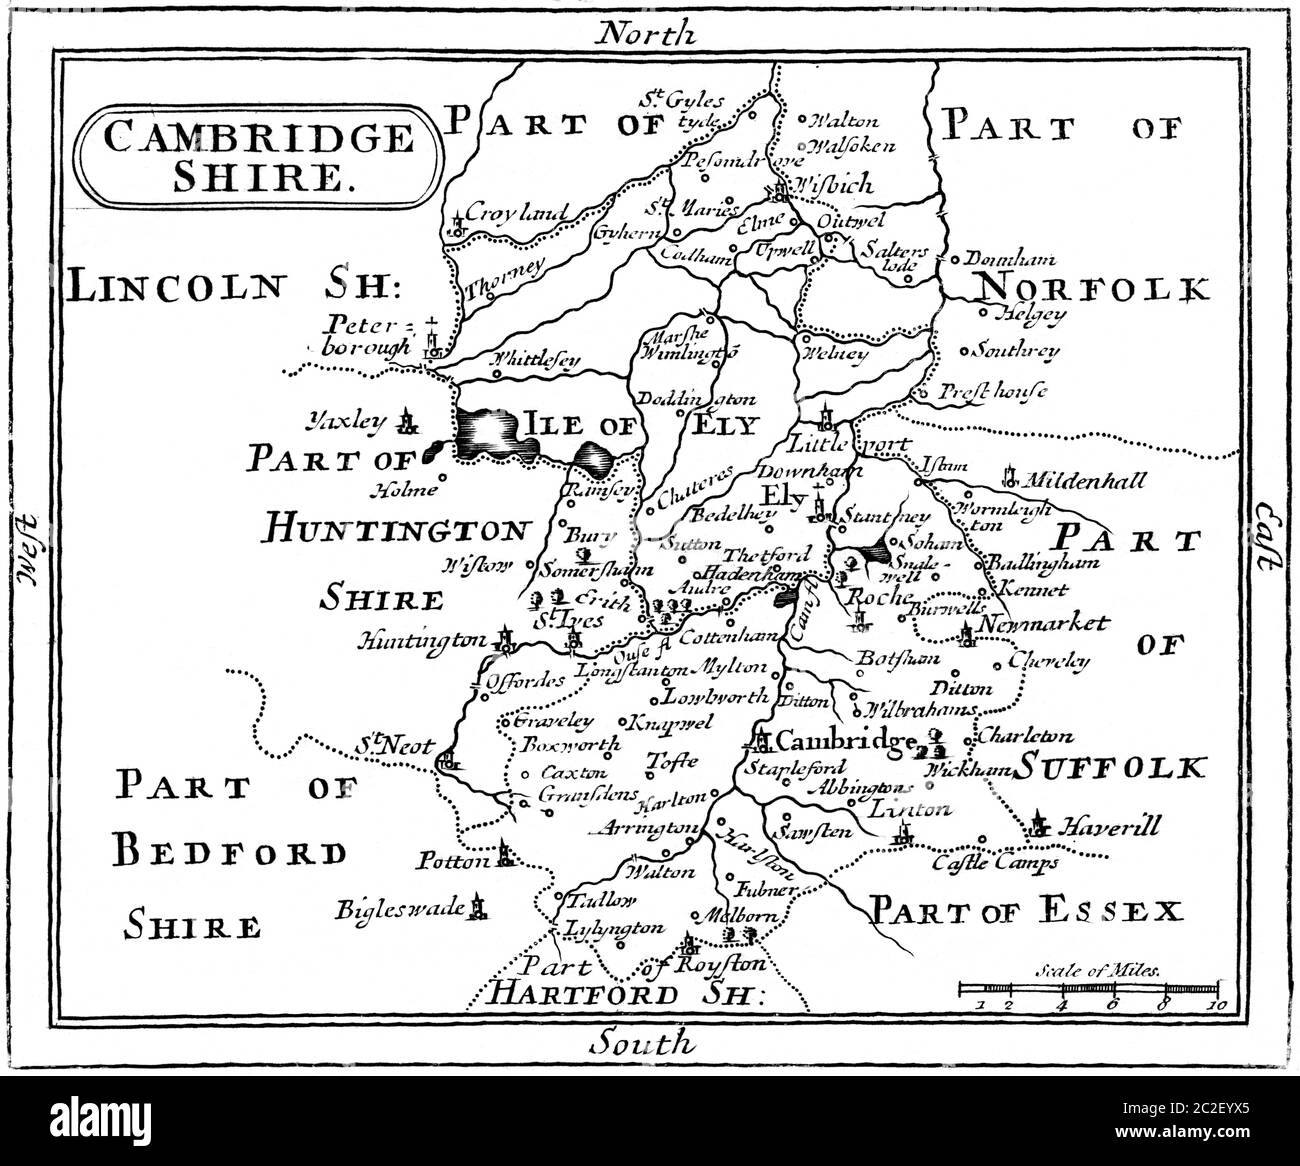 Une carte de Cambridgeshire numérisée à haute résolution à partir d'un livre publié dans les années 1780. Cette image est considérée comme libre de tout droit d'auteur. Banque D'Images